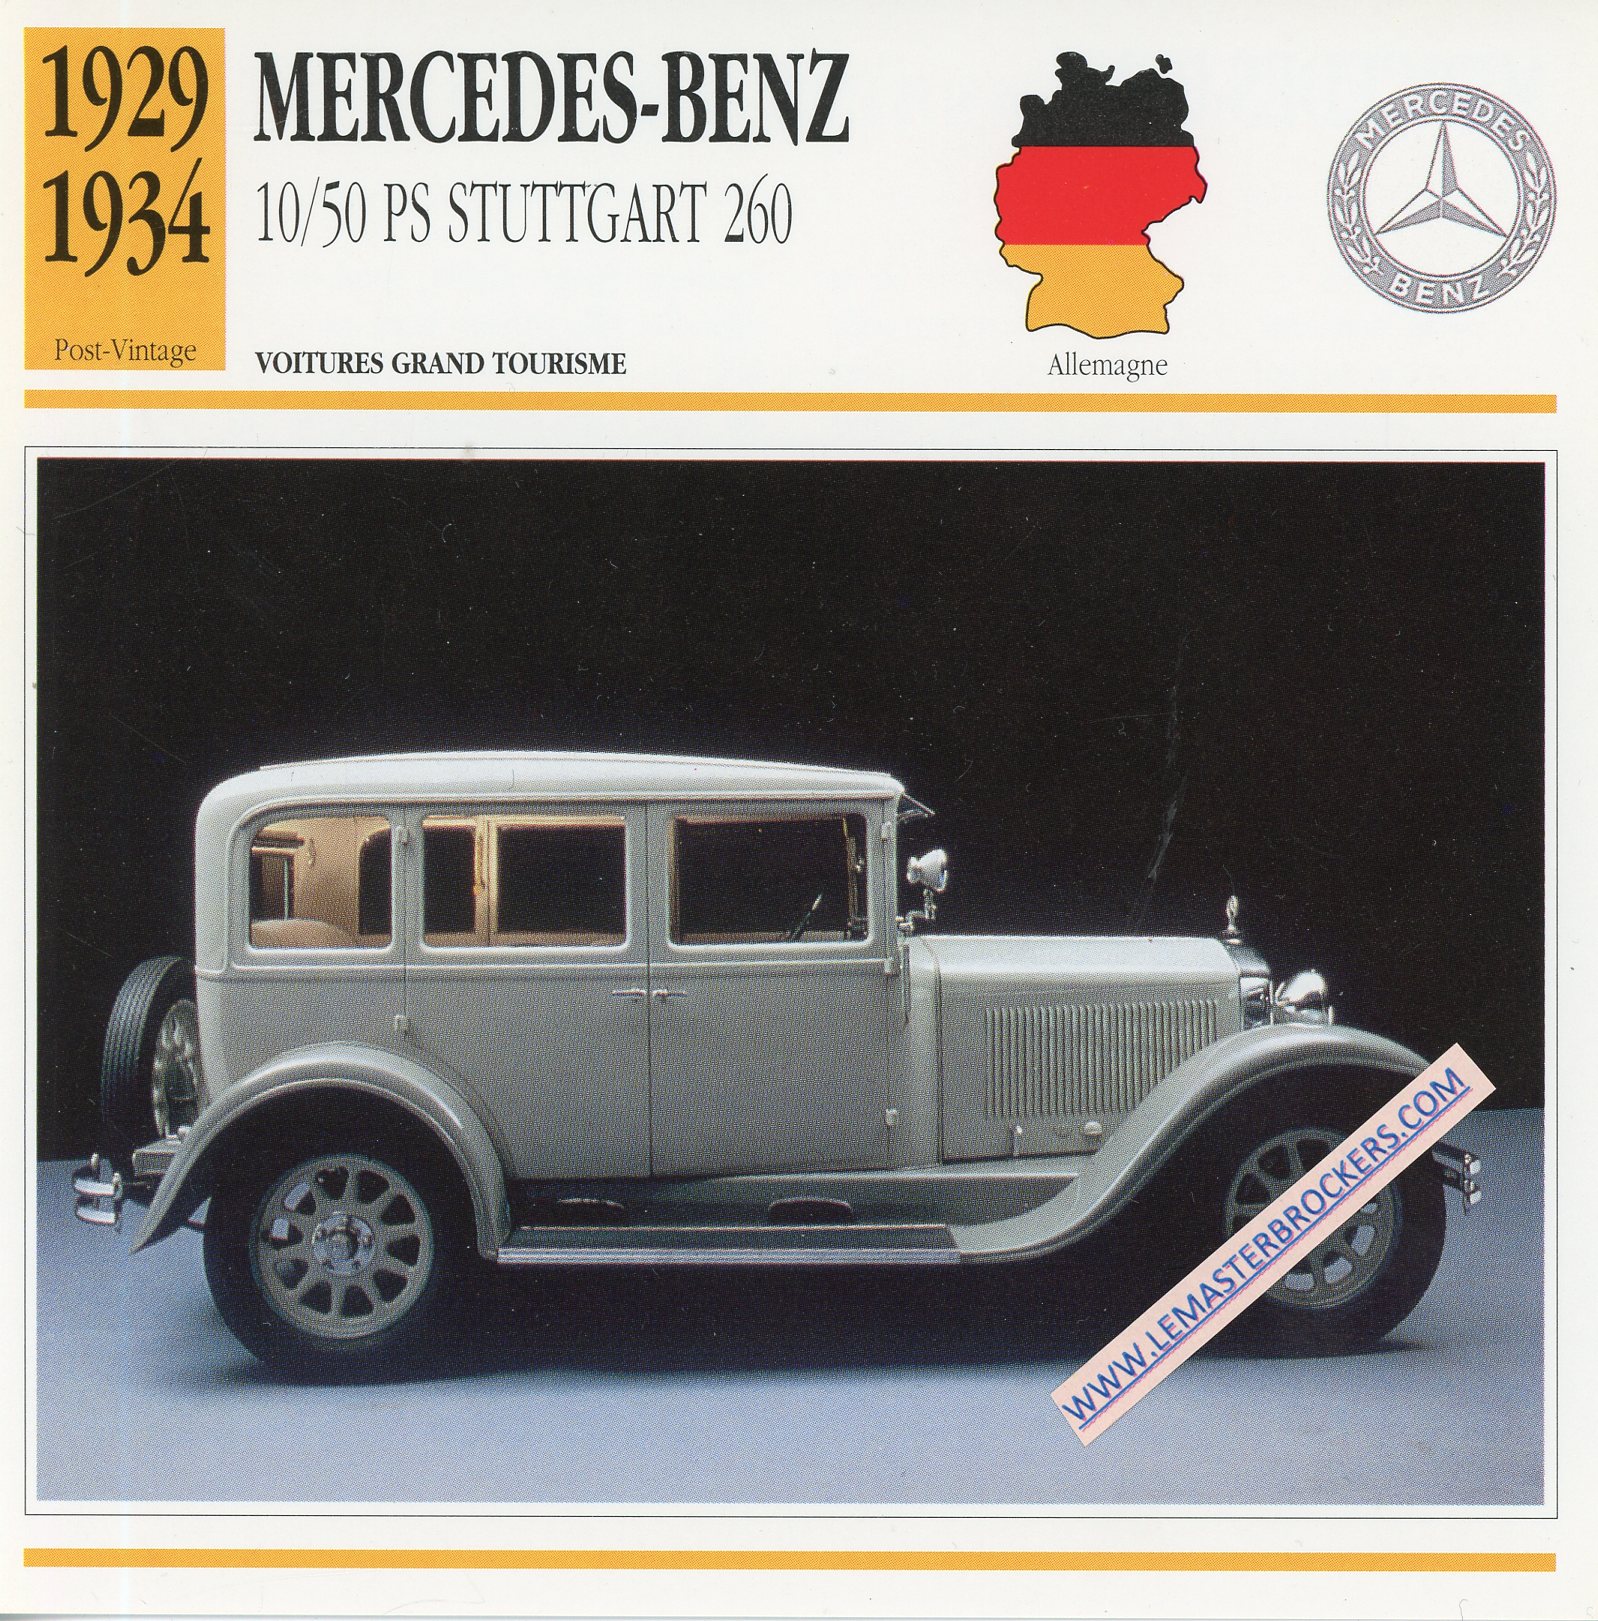 FICHE-AUTO-ATLAS-MERCEDES-BENZ-10-50-PS-STUTTGART-1929-1934-LEMASTERBROCKERS-CARD-CARS